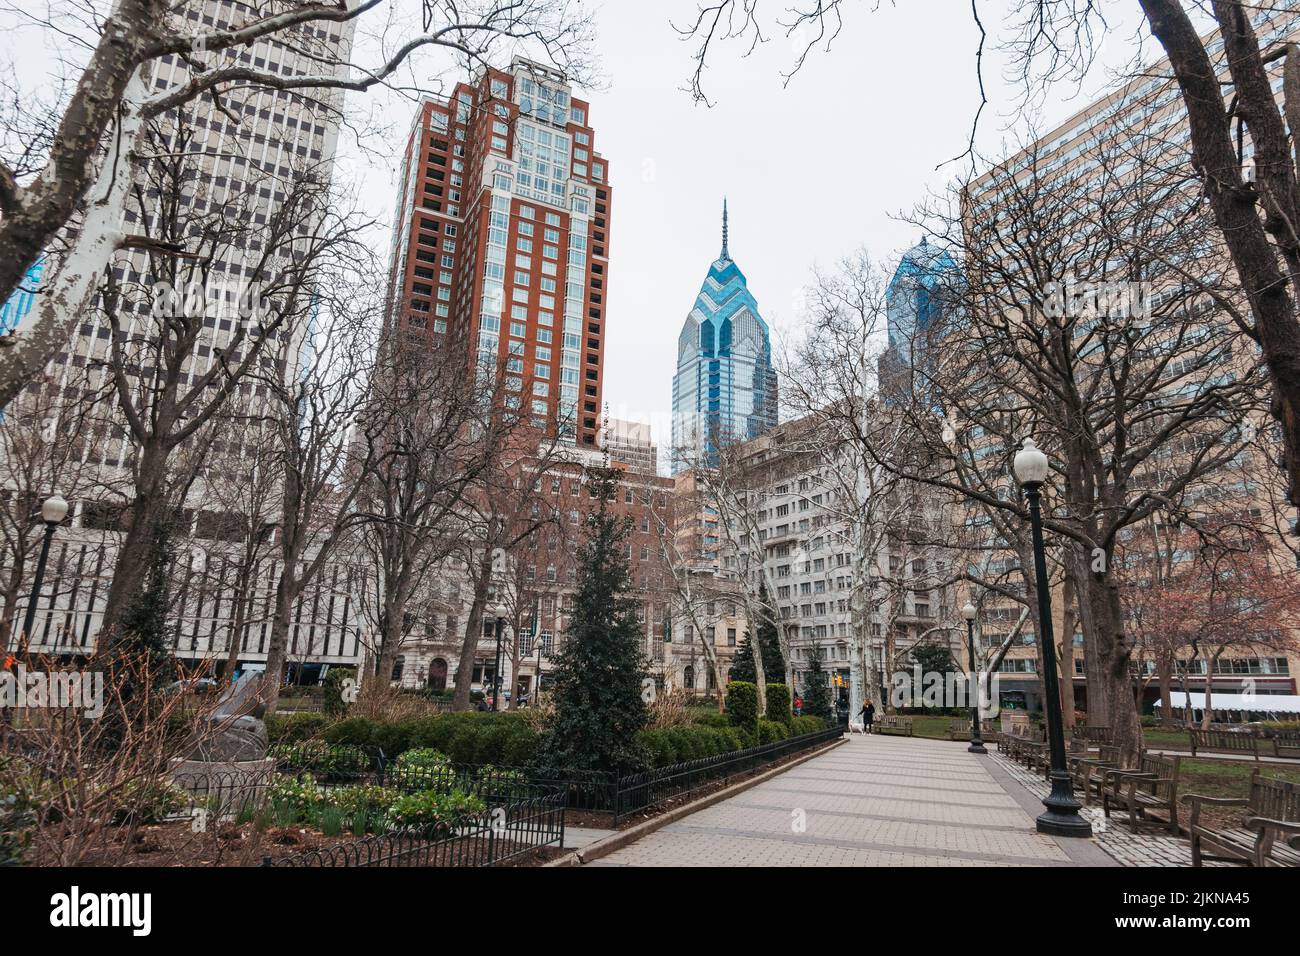 Un rascacielos de Liberty Place, visto desde Rittenhouse Square, Filadelfia, durante el invierno Foto de stock